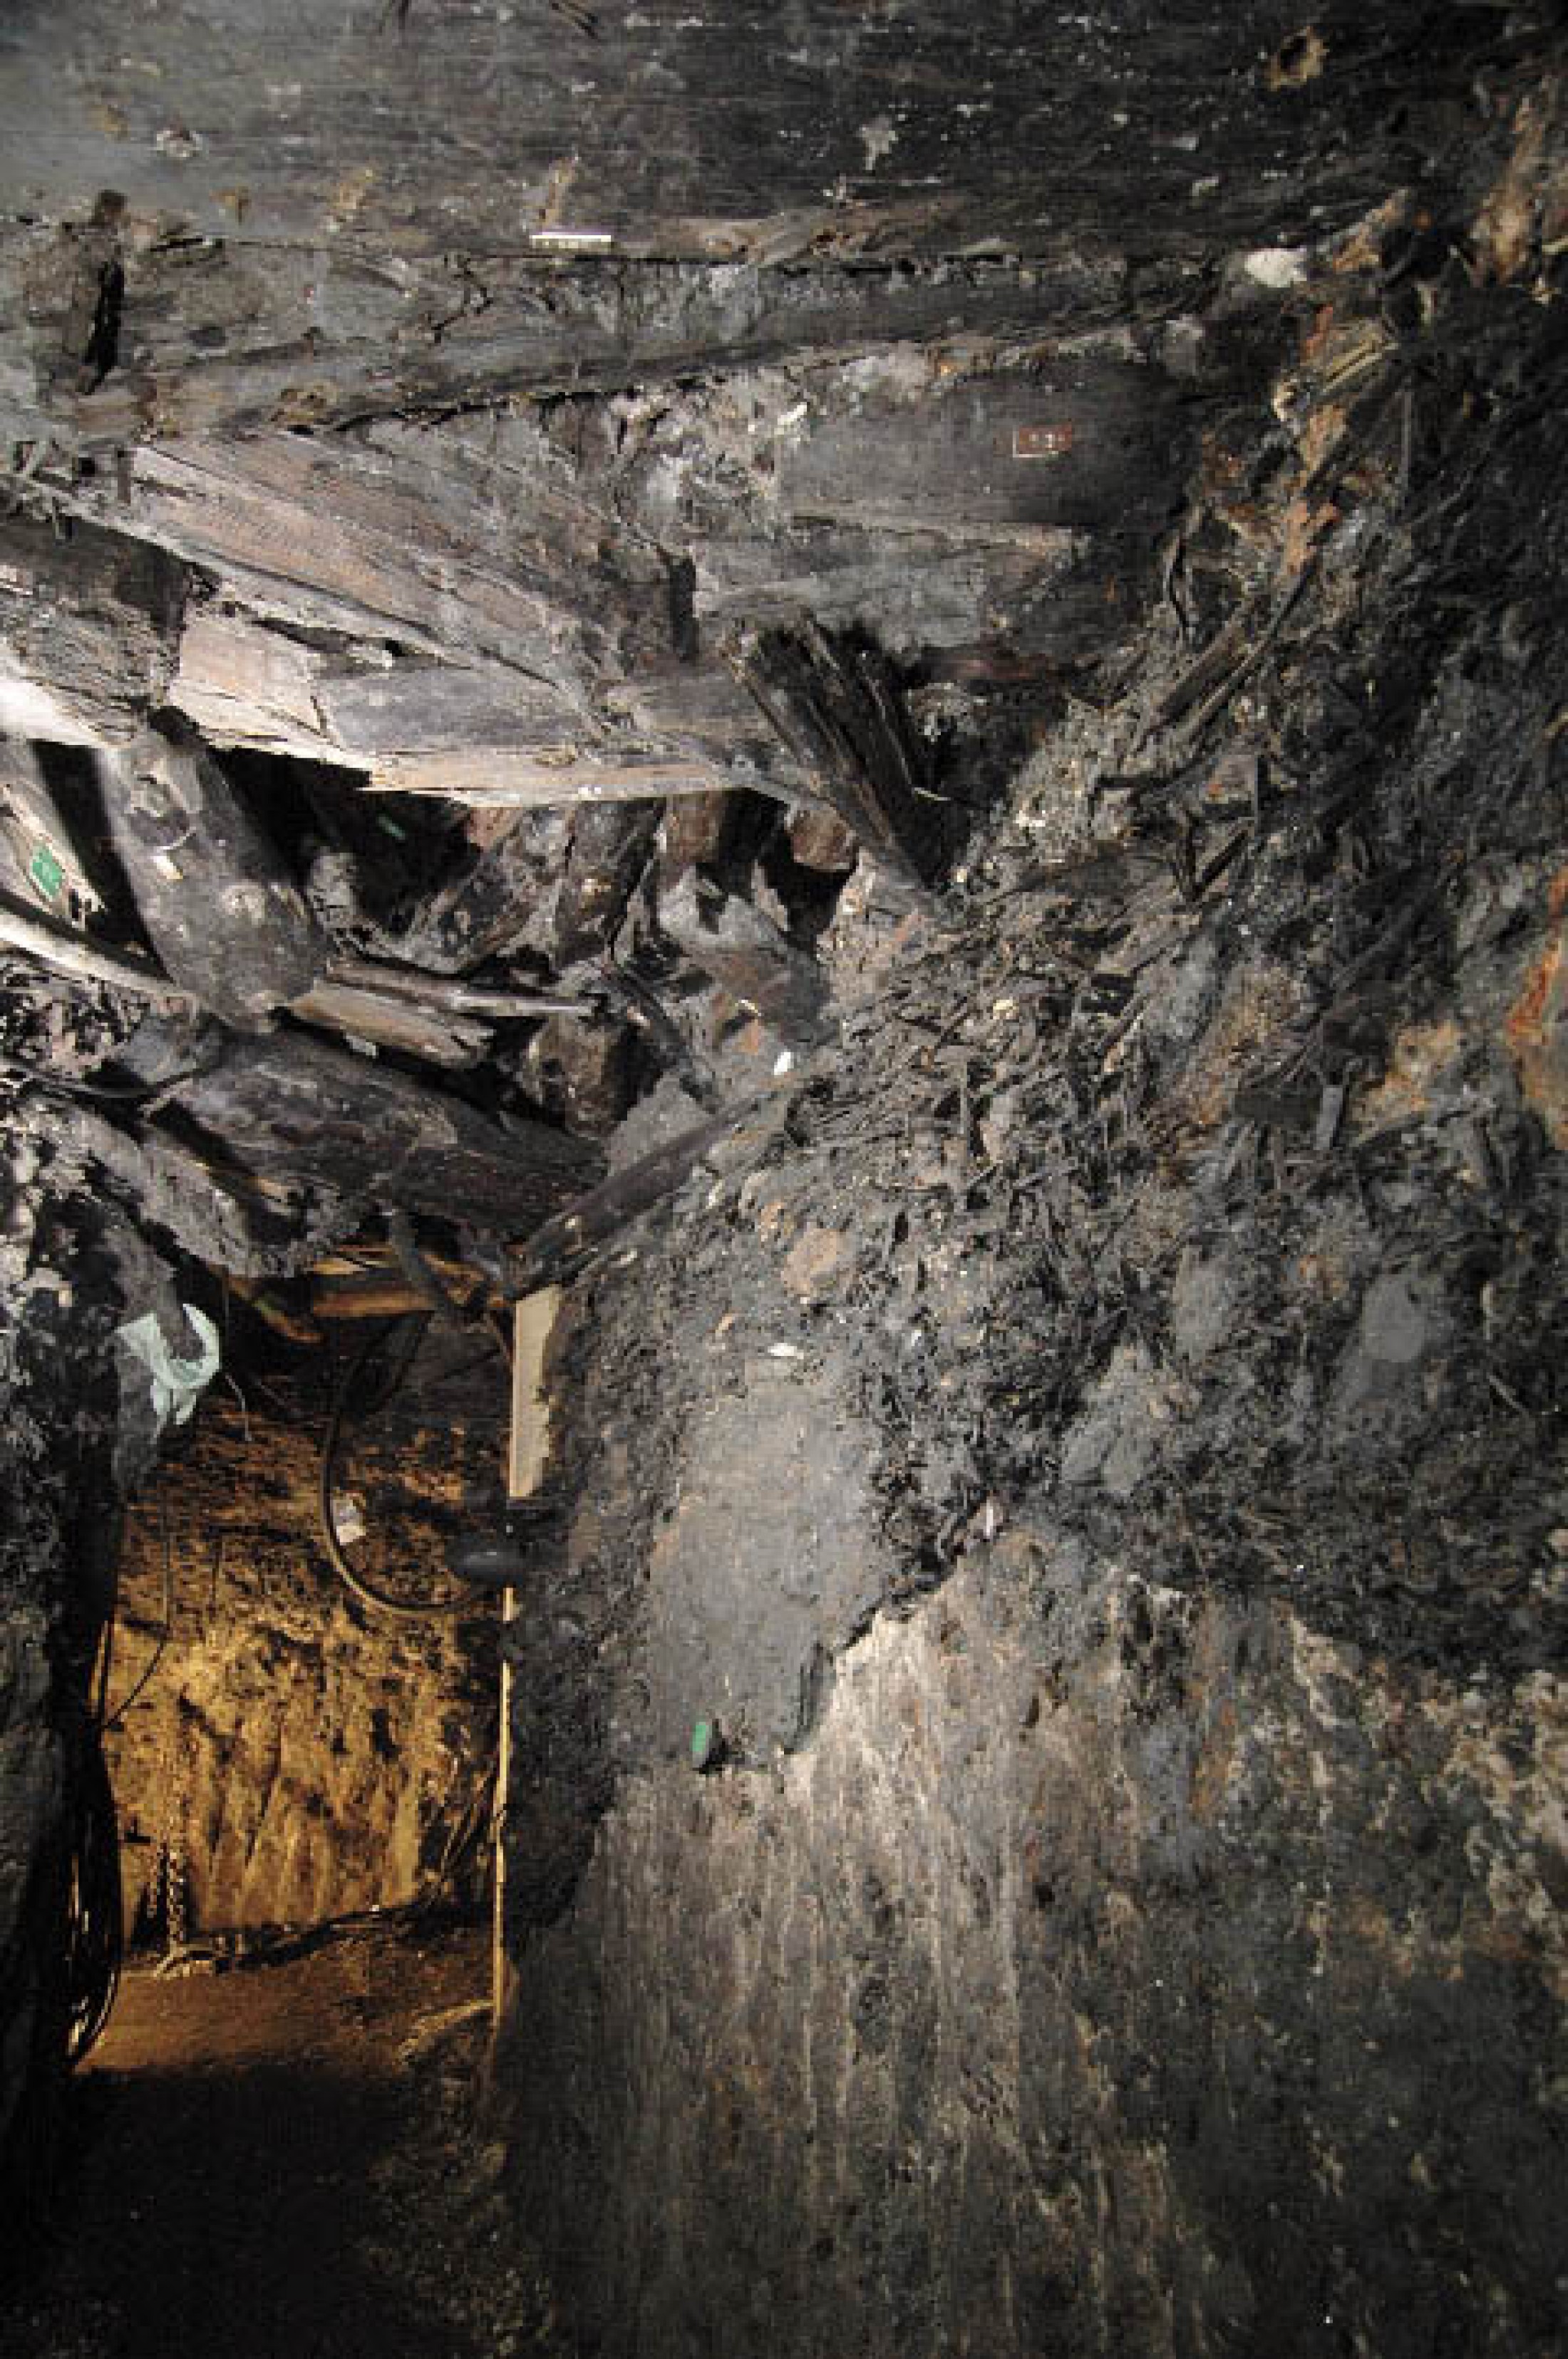 : Reste des bronzezeitlichen Bergbaus im Christian von Tuschwerk. Blick von unten auf einen zusammengestürzten Schachtausbau. (Foto: A. W. Rausch - NHM Wien)